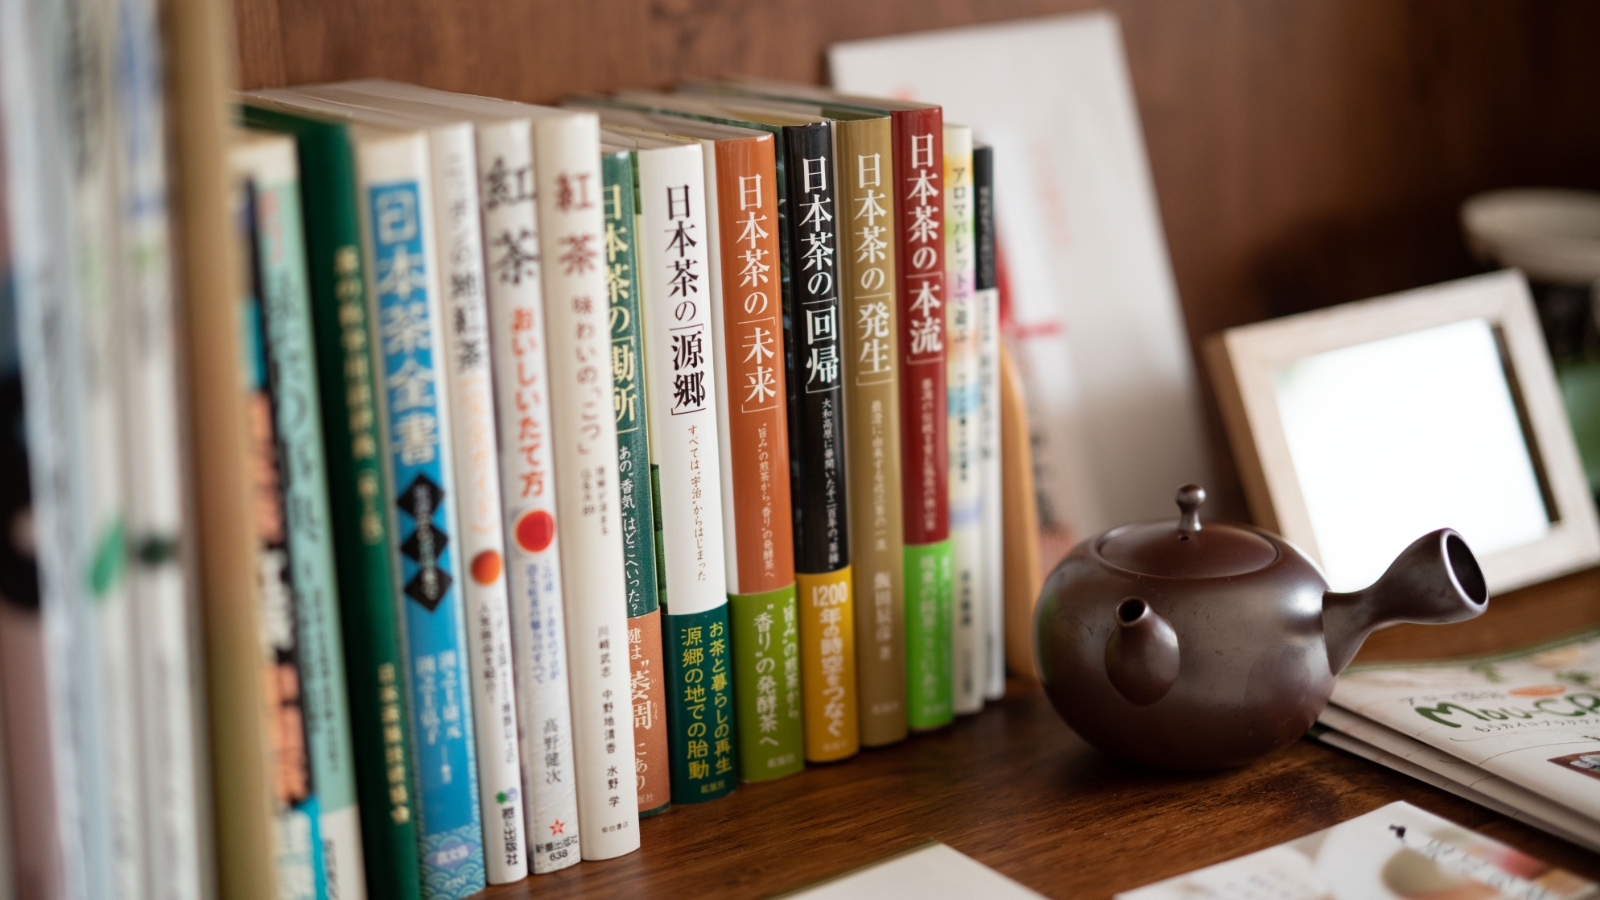 本棚に並ぶ日本茶に関する書籍の写真